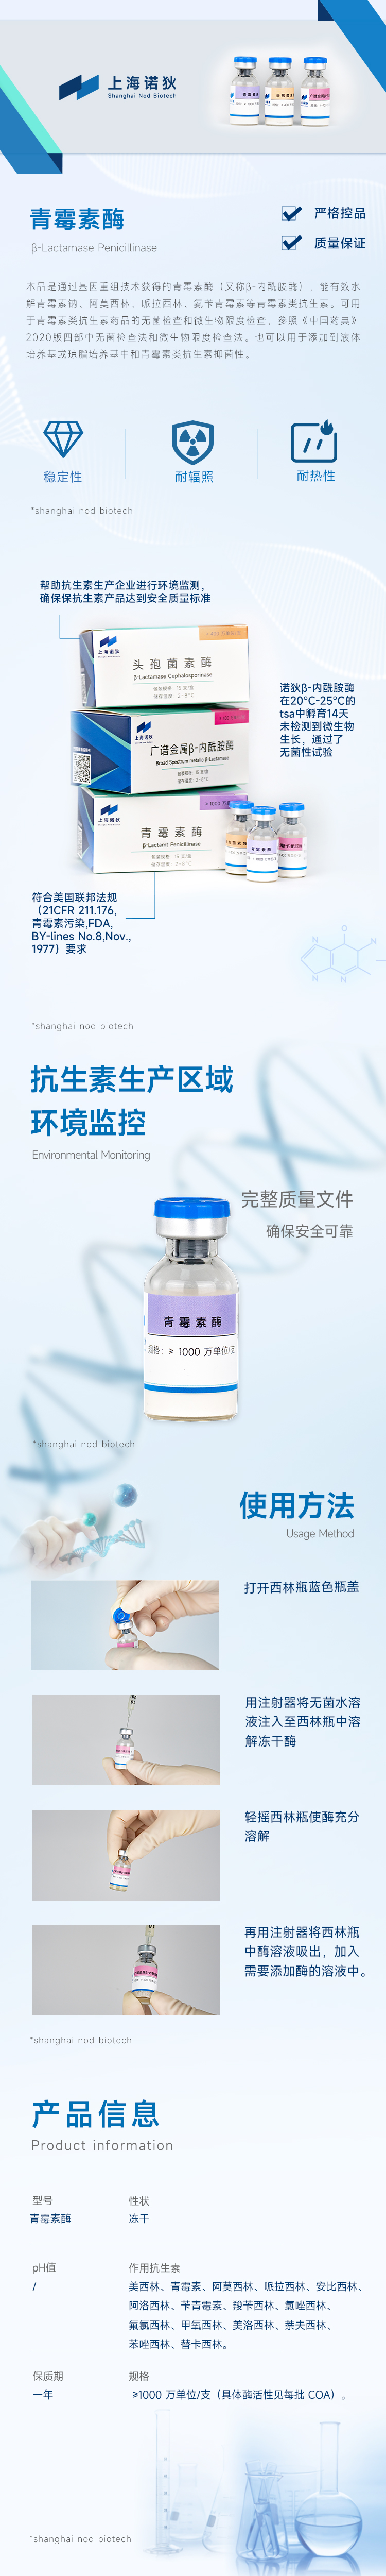 青霉素酶-上海诺狄生物科技有限公司